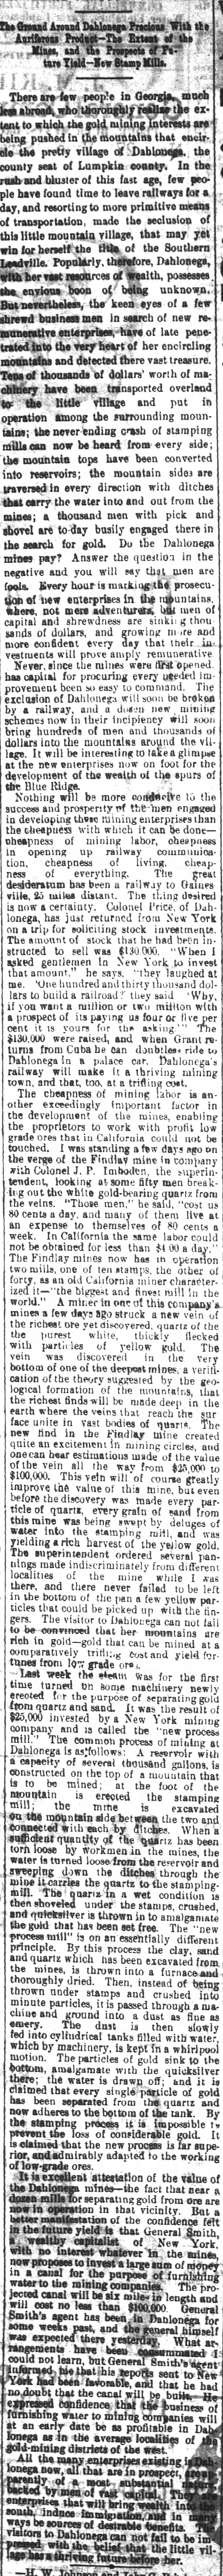 Gold Mining in Dahlonega, 1880, Feb. 1,1880